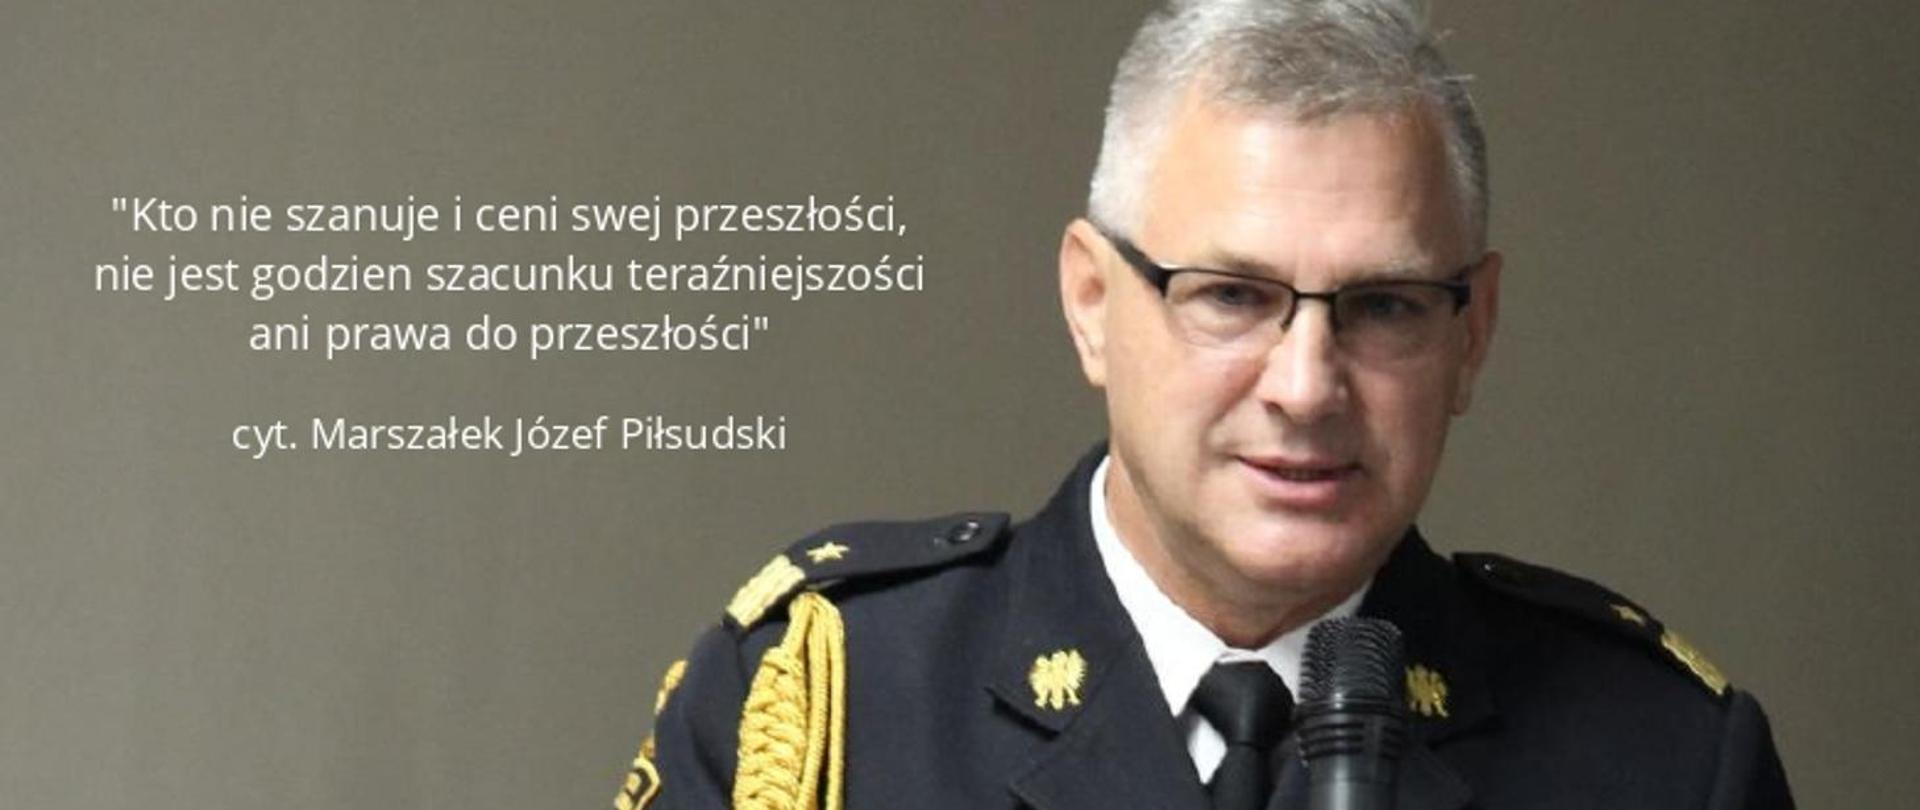 Kujawsko Pomorski Komendant Wojewódzki zacytował słowa Marszałka Józefa Piłsudskiego podczas wystawy.